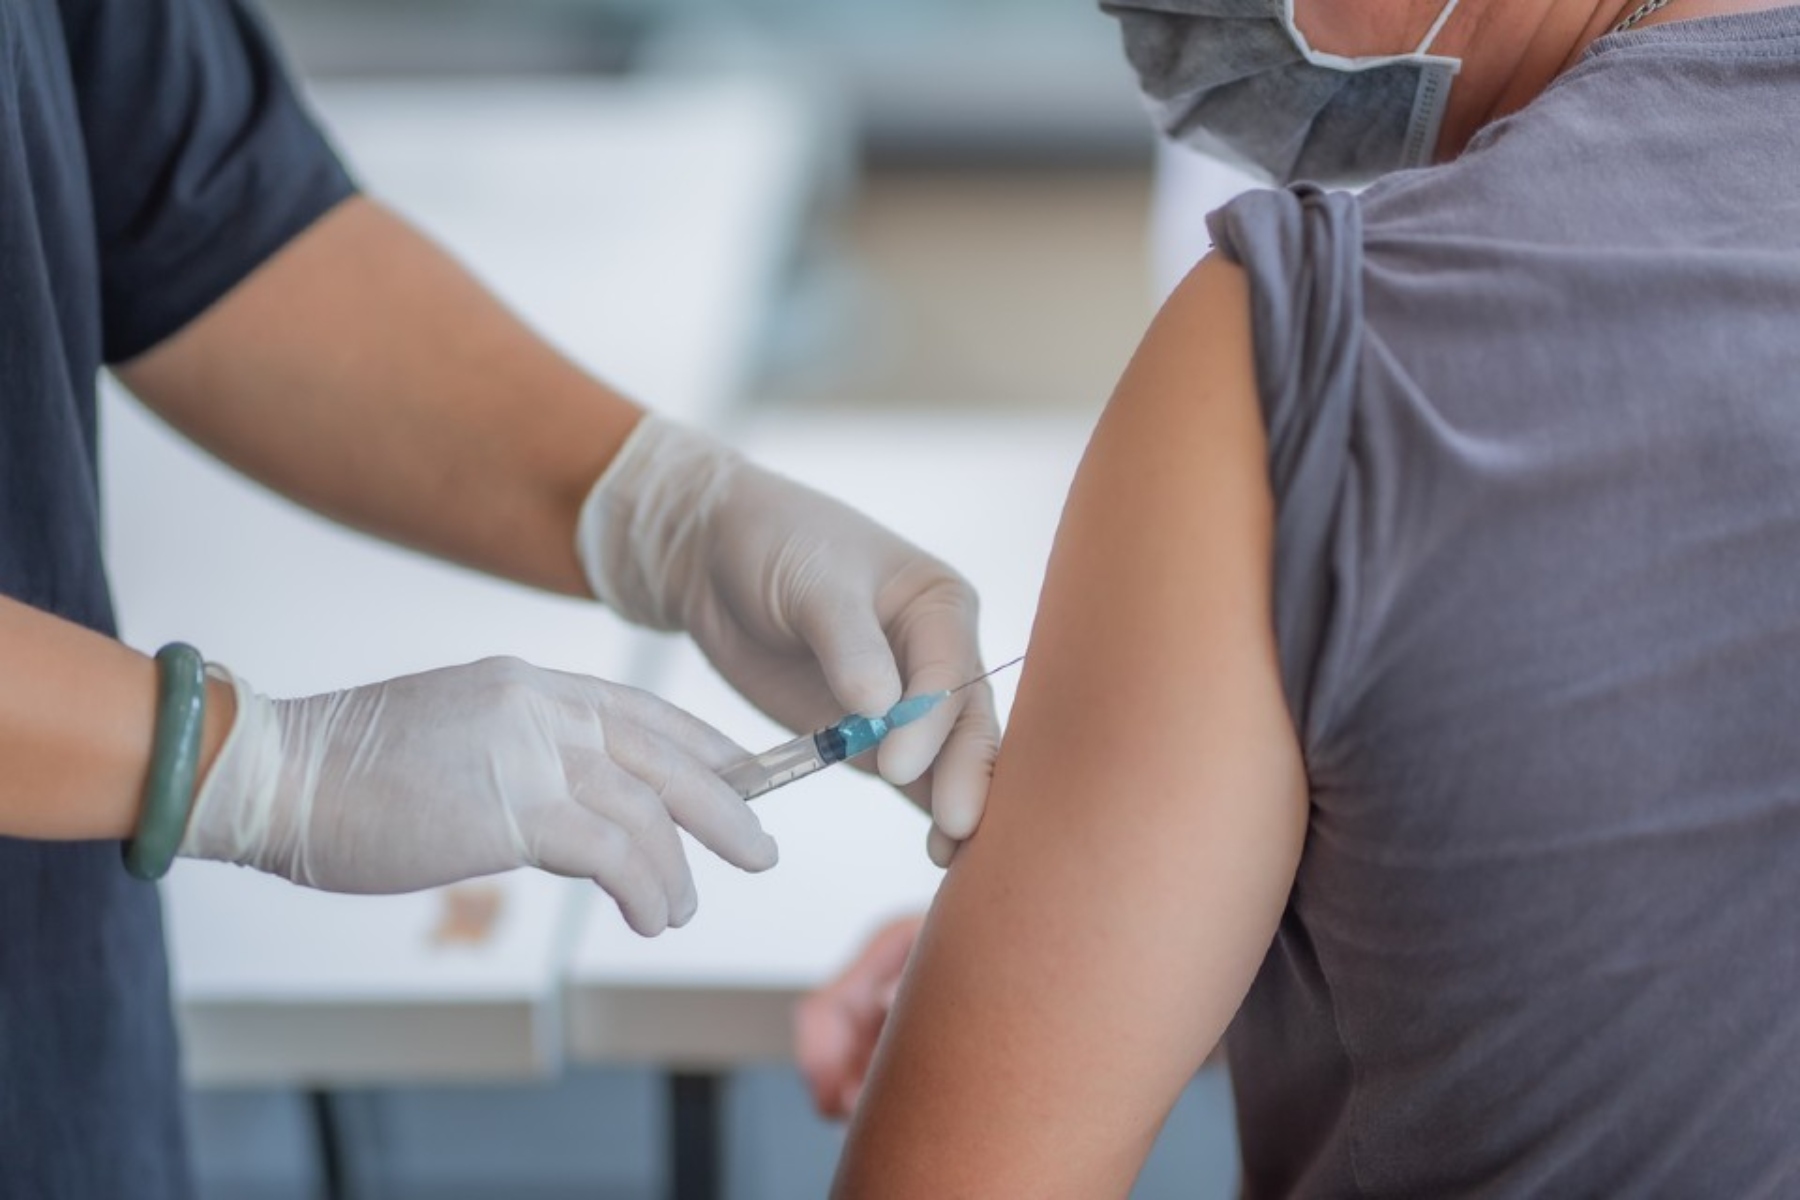 Εμβόλιο γρίπης: Από σήμερα ξεκινά ο αντιγριπικός εμβολιασμός δωρεάν & χωρίς συνταγή